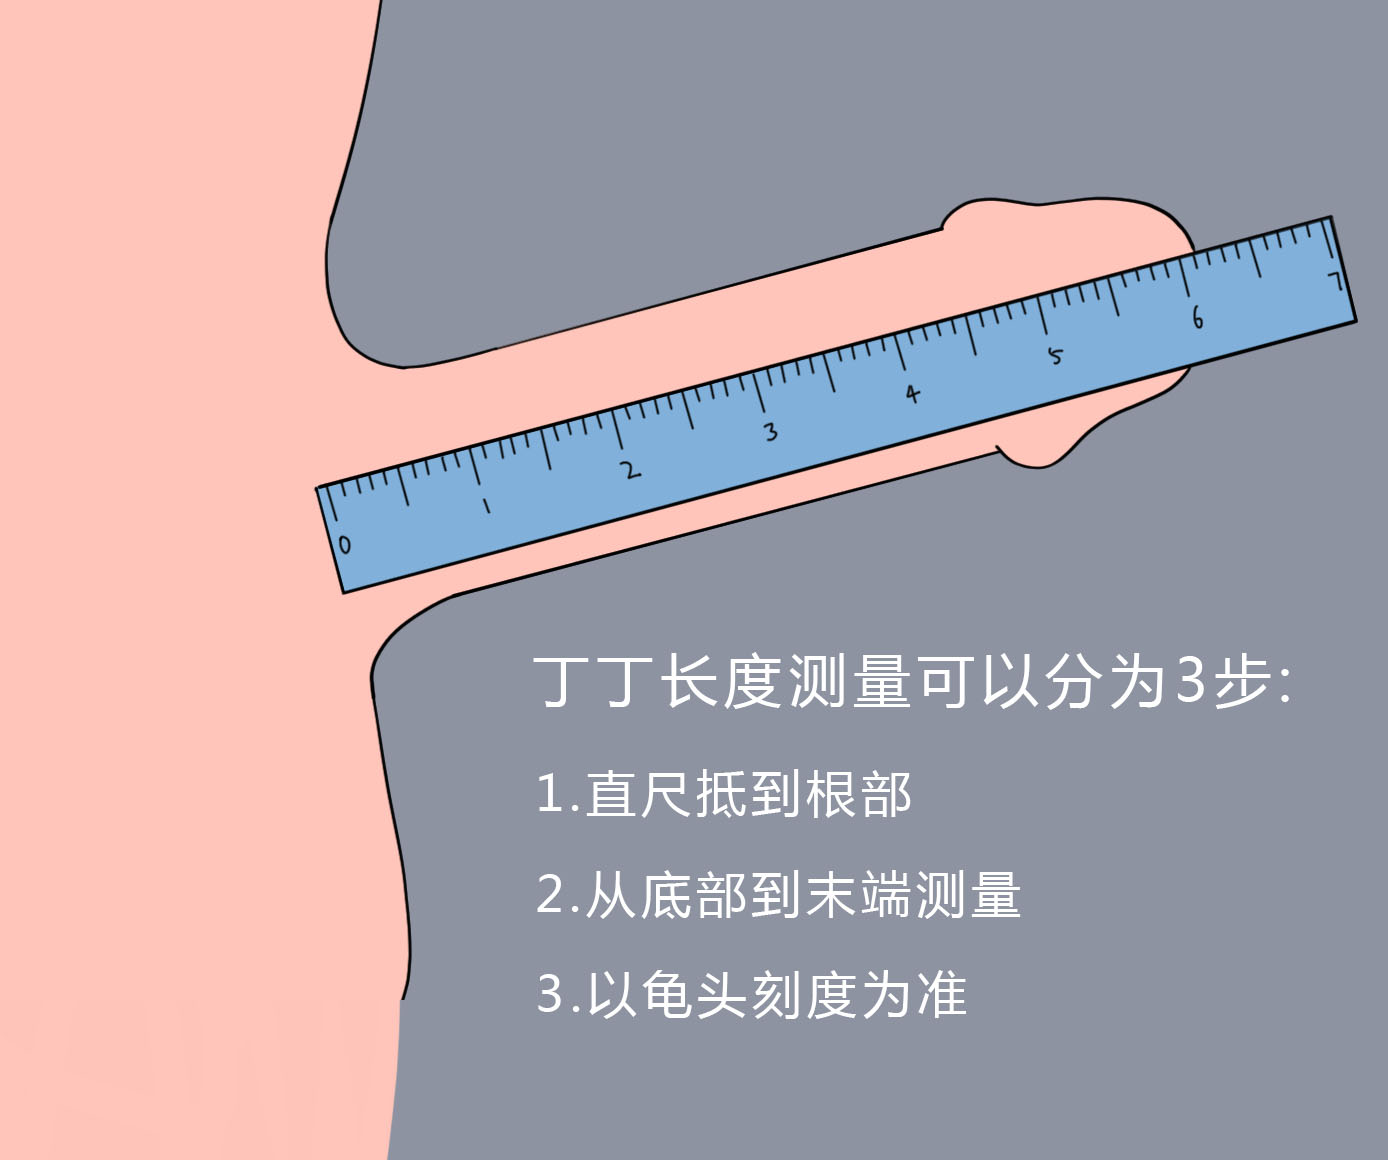 想要知道丁丁的长度,我们可以通过三个方式,分别是测量松弛长度,牵拉